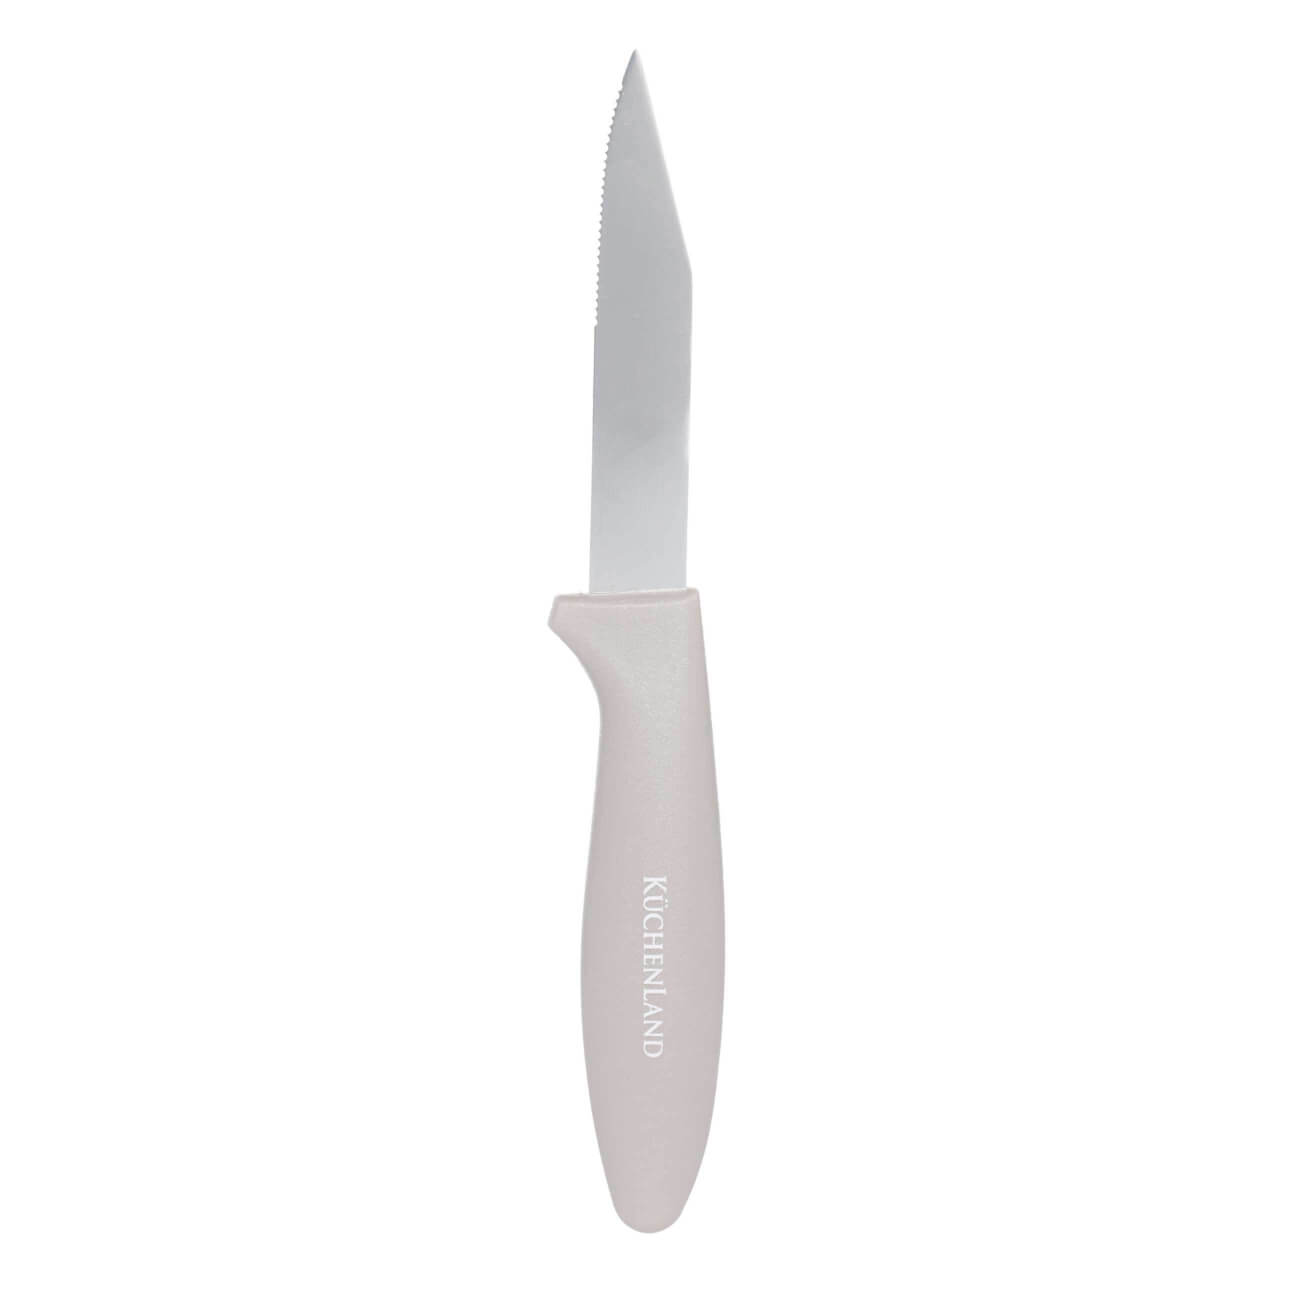 Нож для чистки овощей, 8 см, сталь/пластик, серо-коричневый, Regular изображение № 1